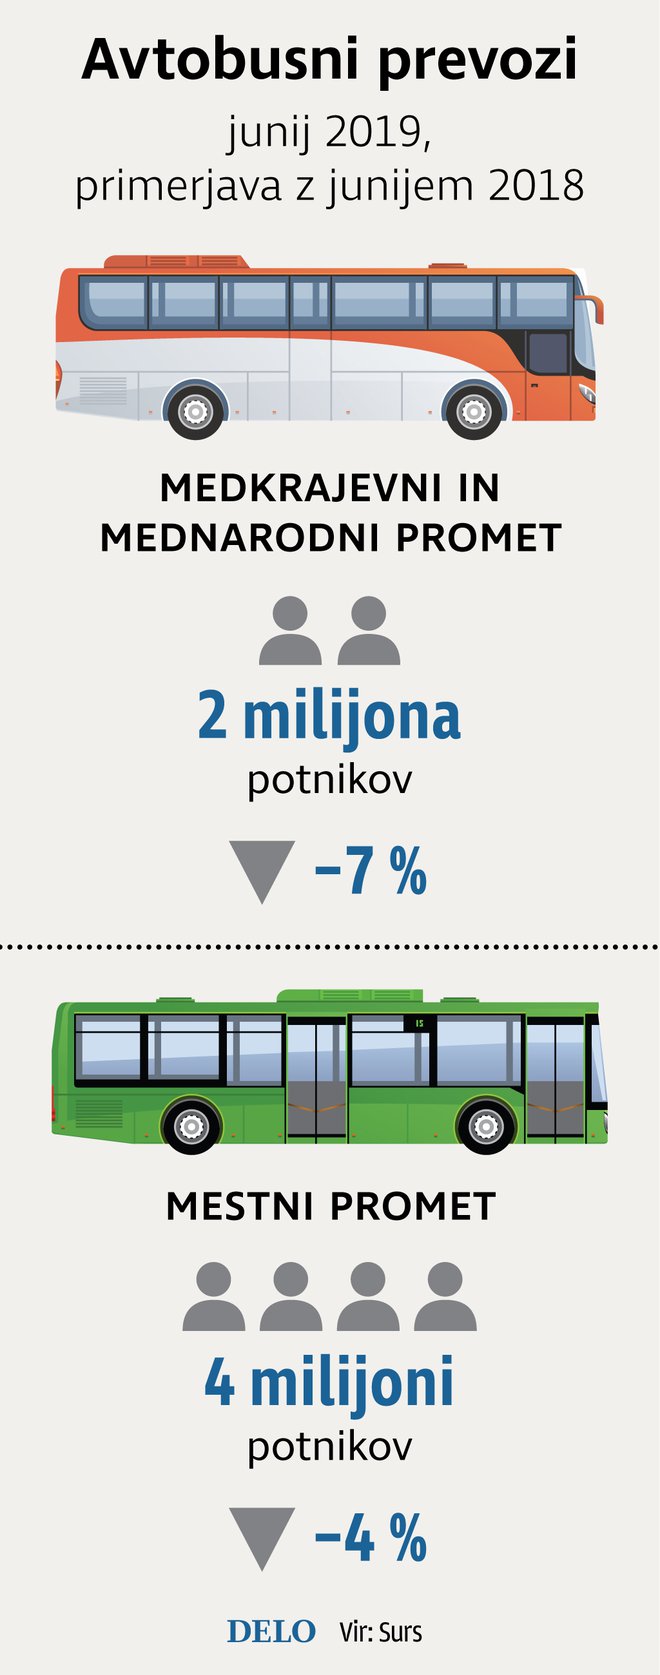 Avtobusni prevozi. Infografika: Delo